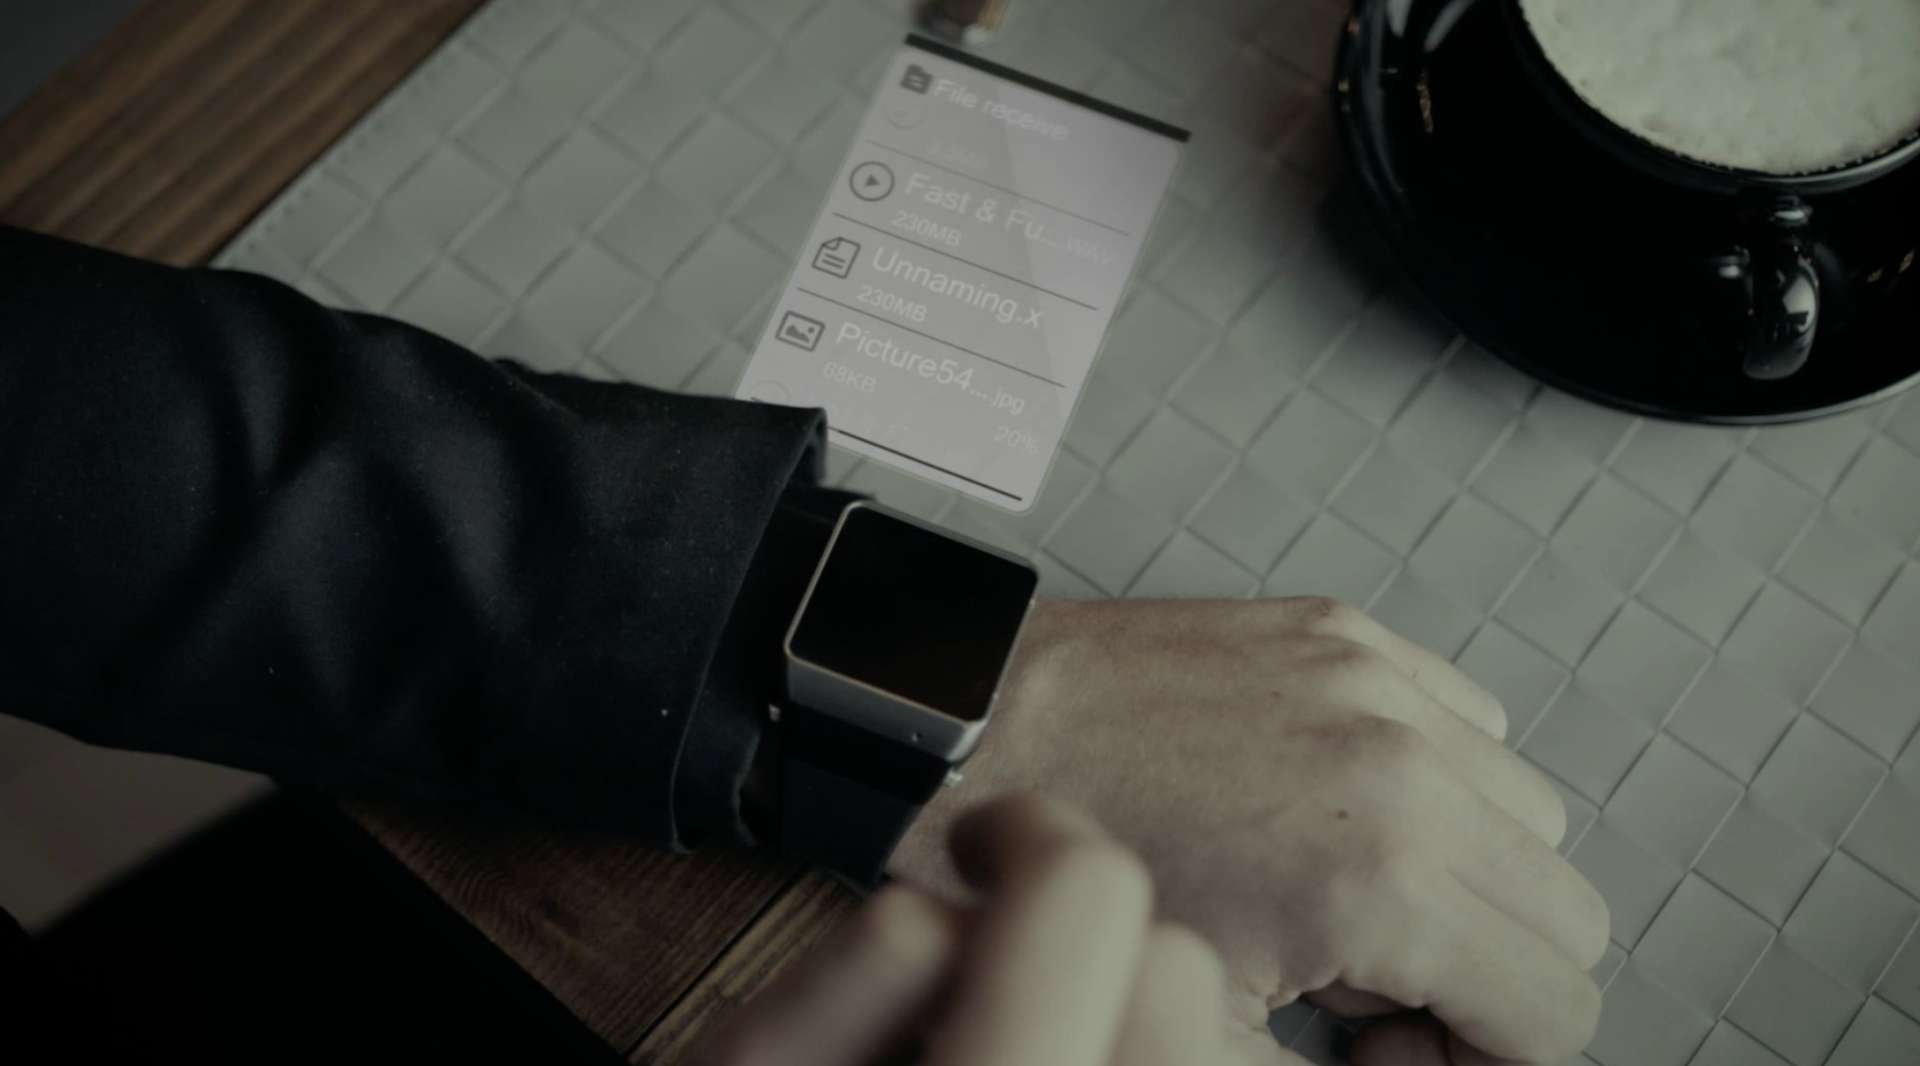 一数科技腕投穿戴设备 ASU CASTING上市发布广告《触手可及篇》